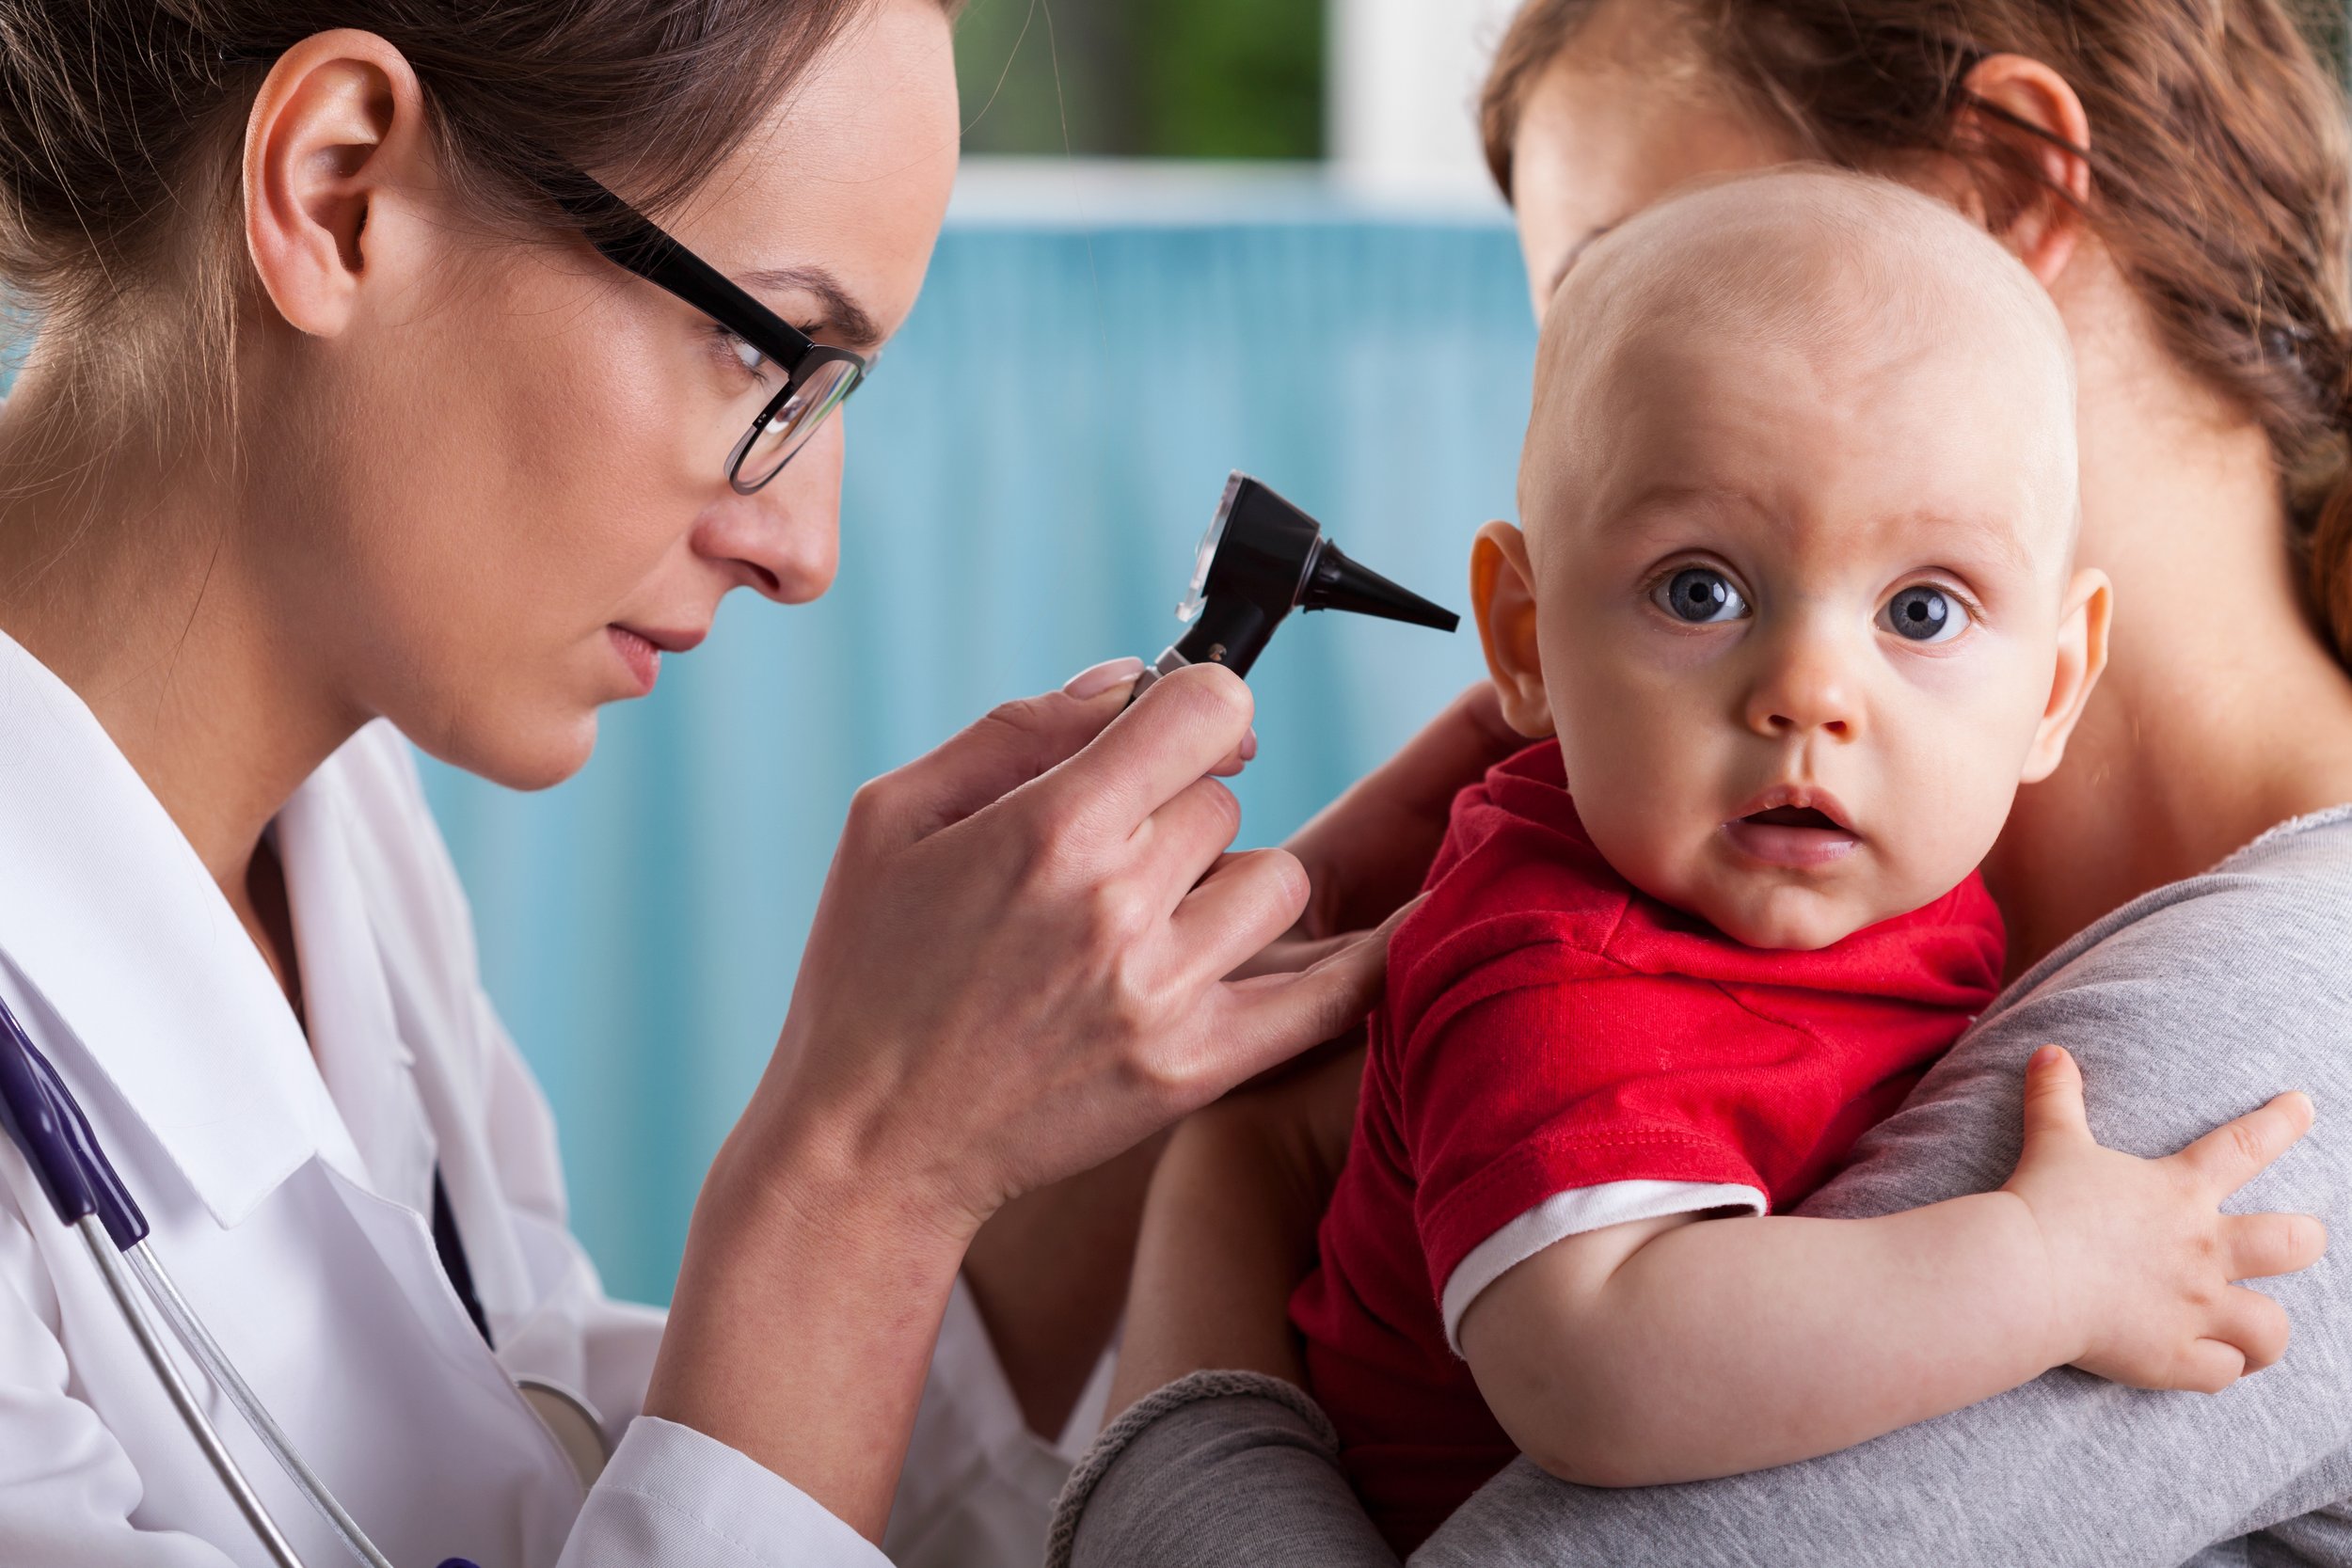 Child's otolaryngologist doing ear examination